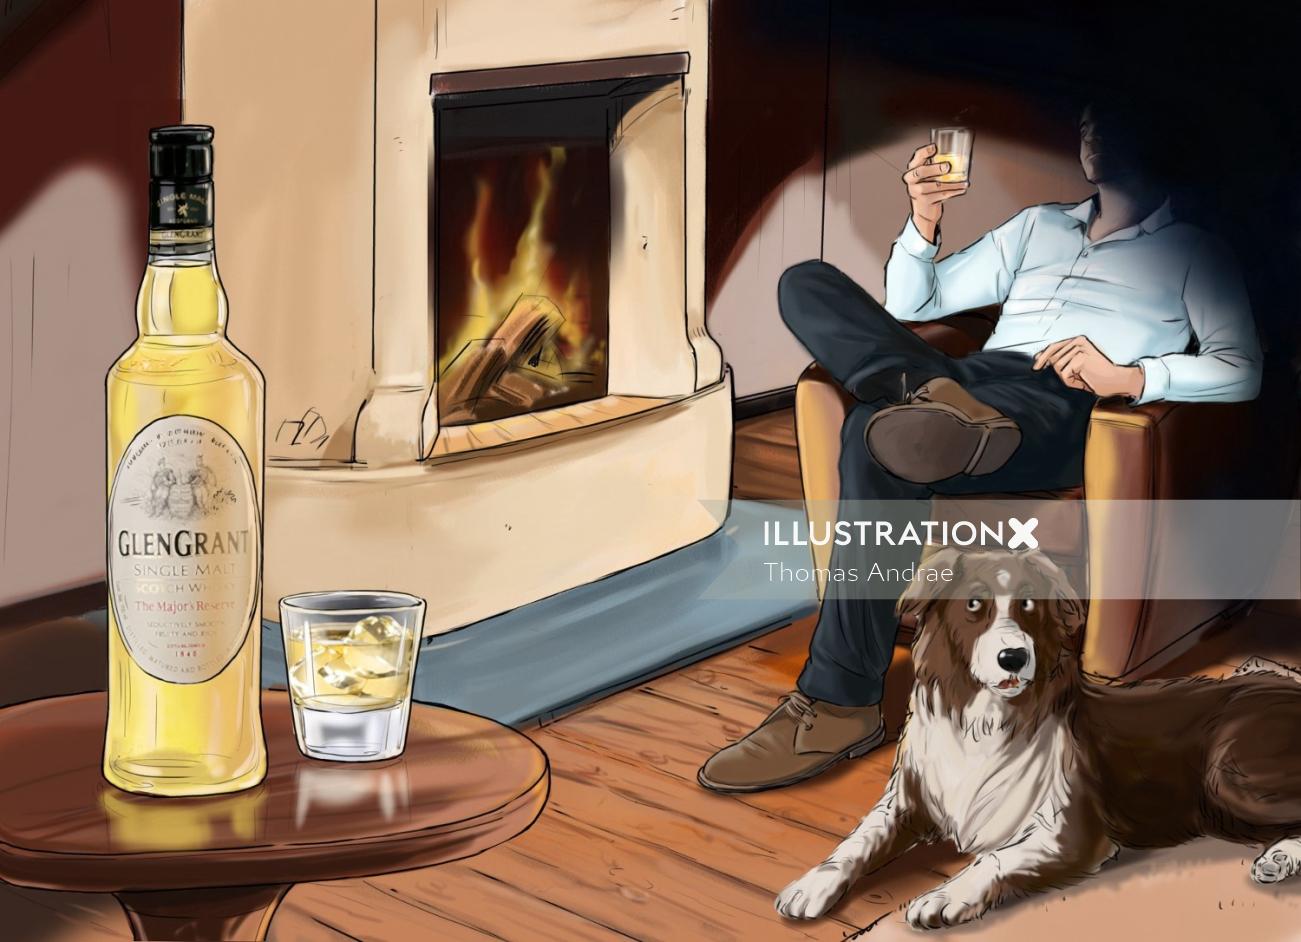 火のそばの椅子に座っている男、地面に座っている犬、テーブルの上のアルコール